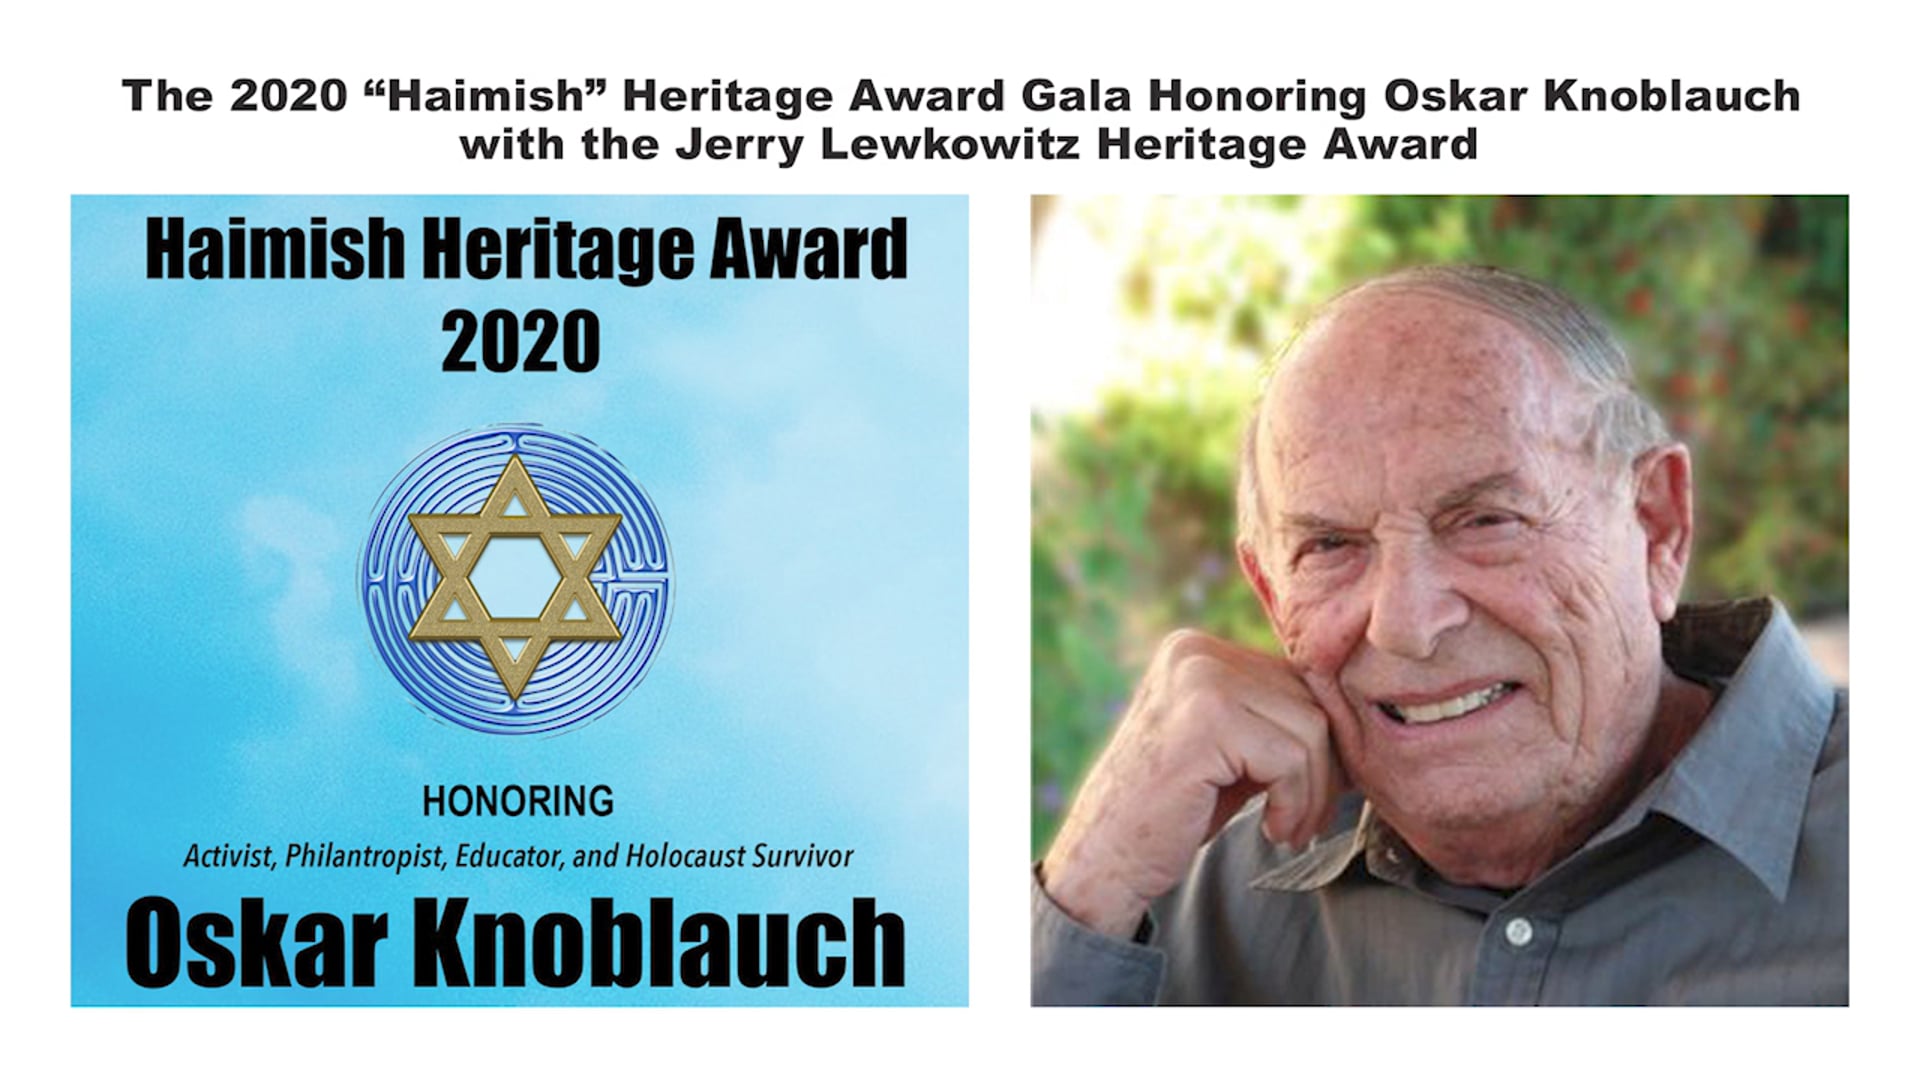 The 2020 “Haimish” Heritage Award Gala Honoring Oskar Knoblauch with the Jerry Lewkowitz Heritage Award